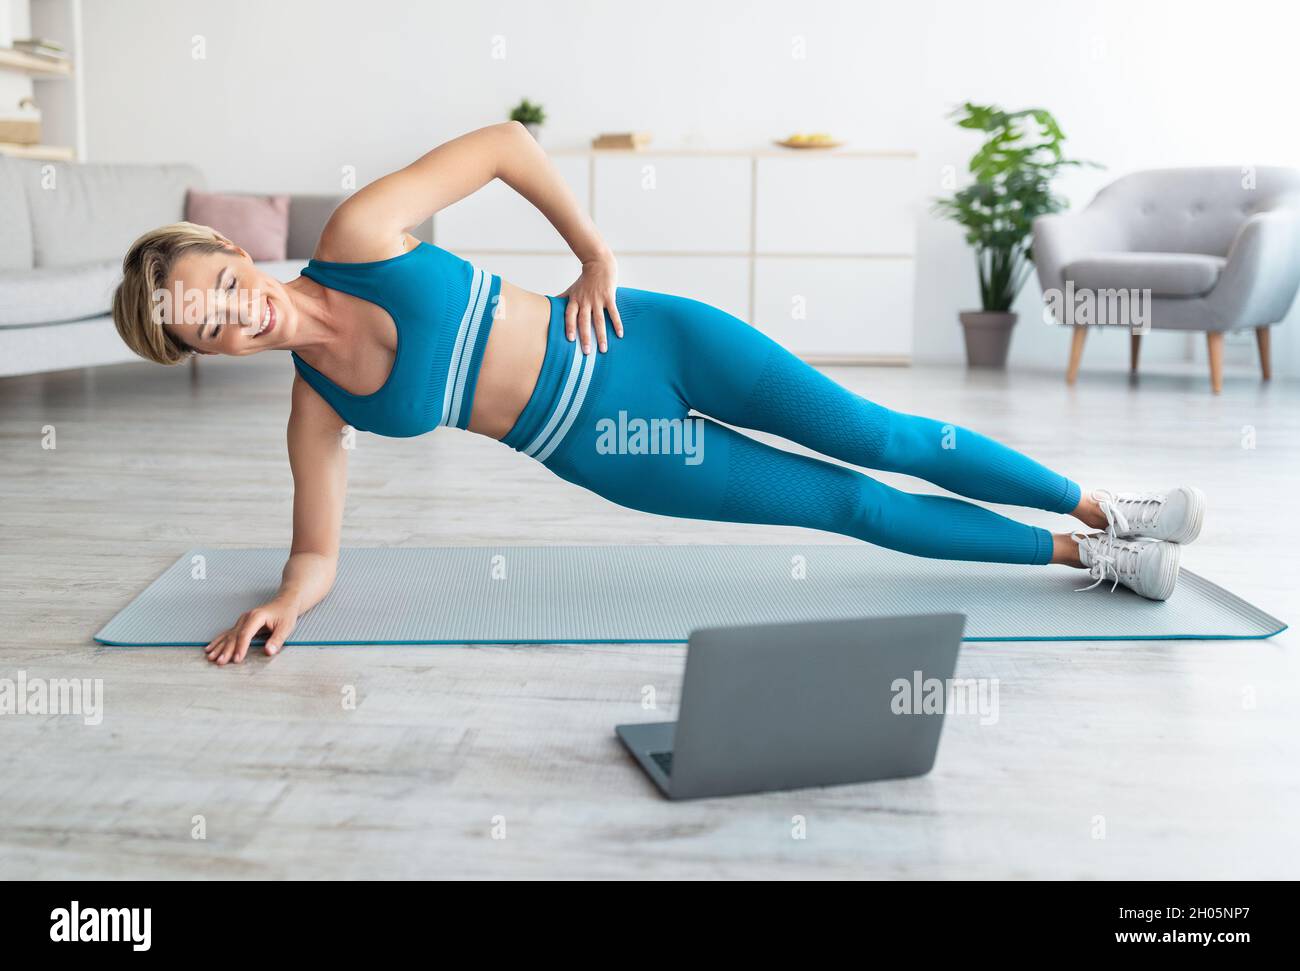 Ganzkörperlänge von Happy Fit Frau Training Stehen in Side Plank Position auf dem Boden Yoga-Matte im Wohnzimmer, Blick auf Computer-Bildschirm beobachten T Stockfoto